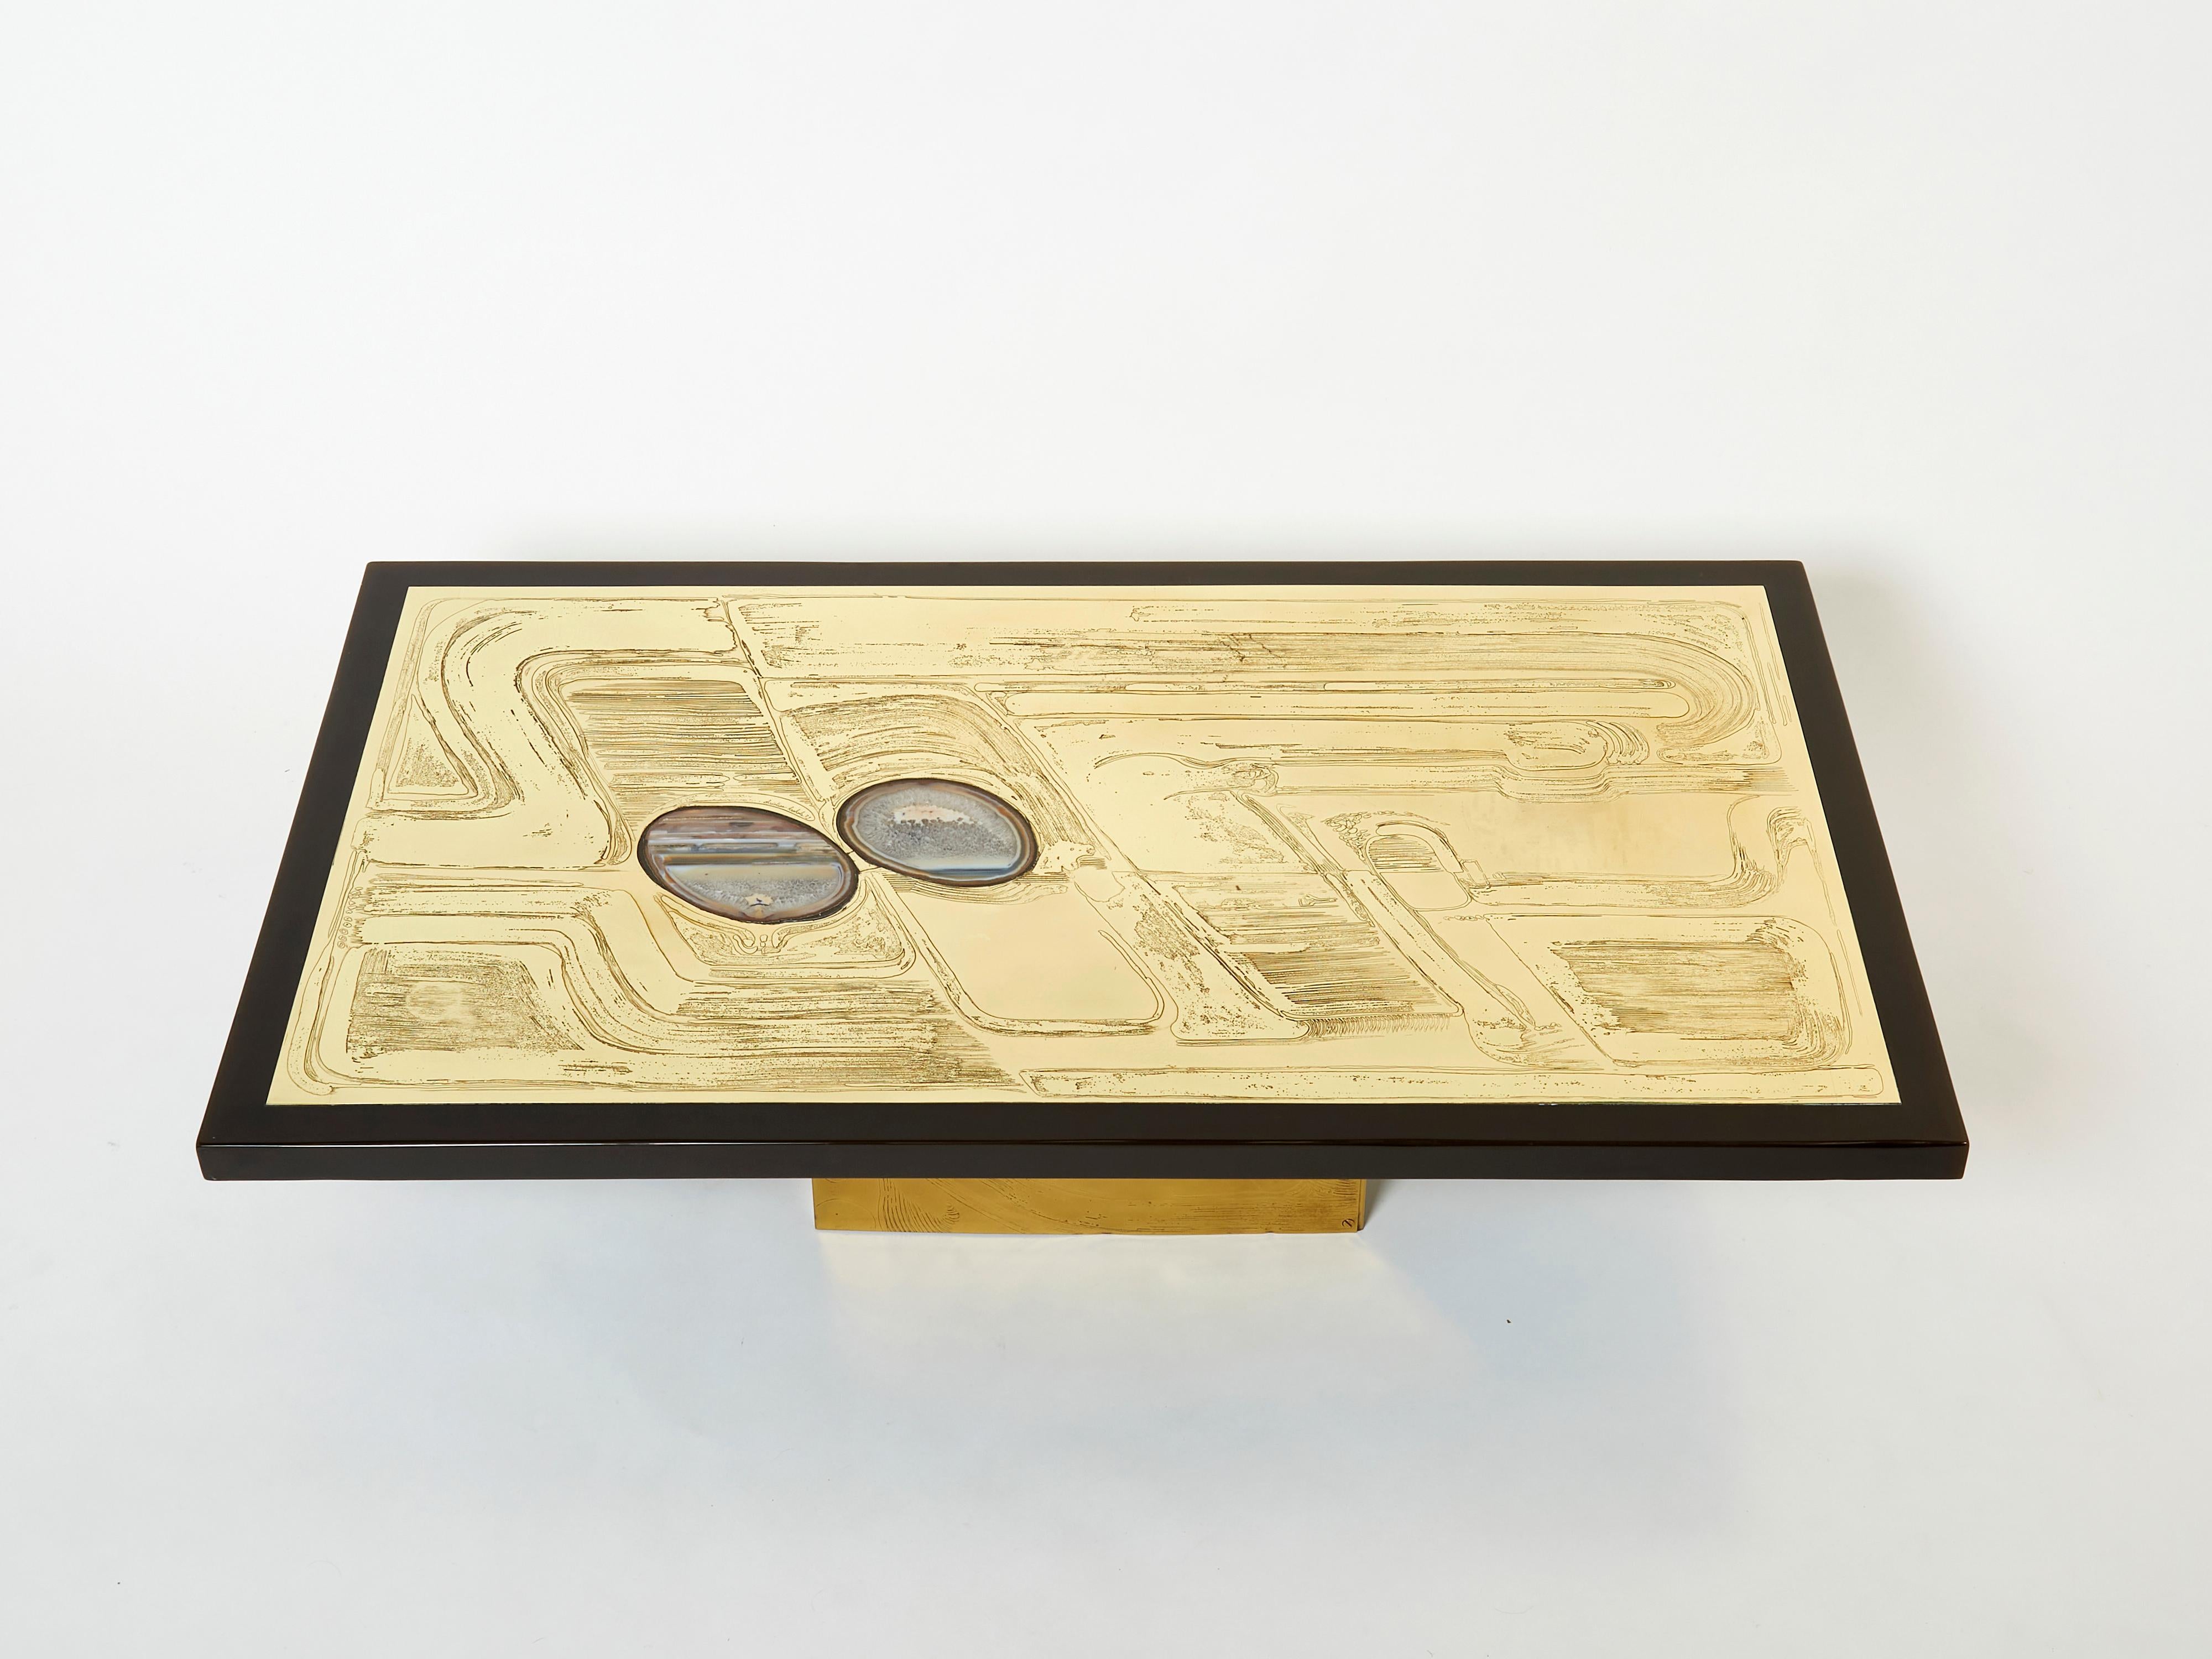 Dies ist ein schöner belgischer Couchtisch, signiert von Christian Krekels im Jahr 1979. Der Tisch hat eine schöne dekorative Tischplatte aus geätztem Messing mit zwei eingelegten Achatsteinen, die von einem dunkelbraunen Harzeinsatz umrahmt wird.